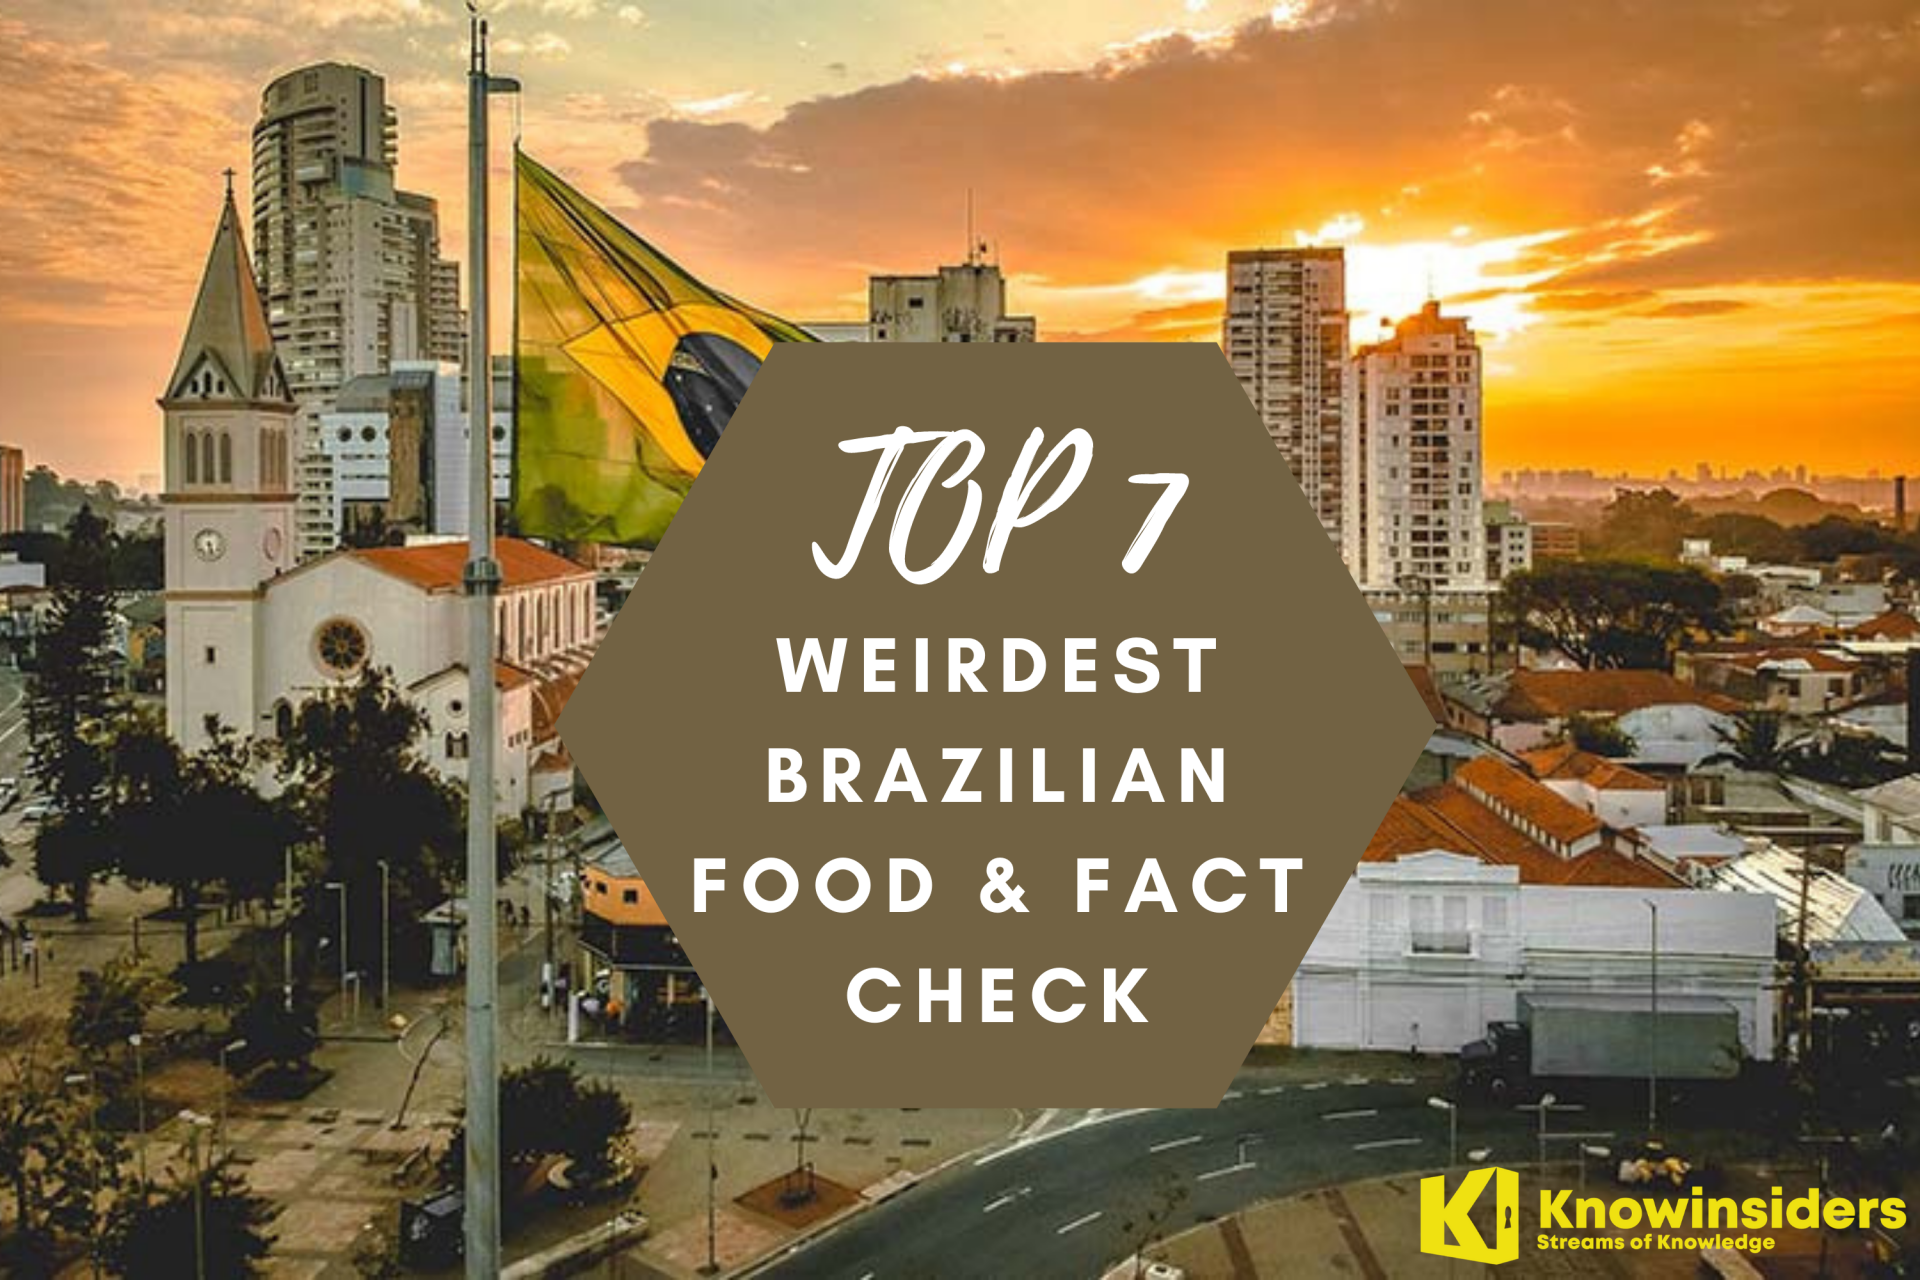 Top 7 Weirdest Brazilian Food & Fact Check